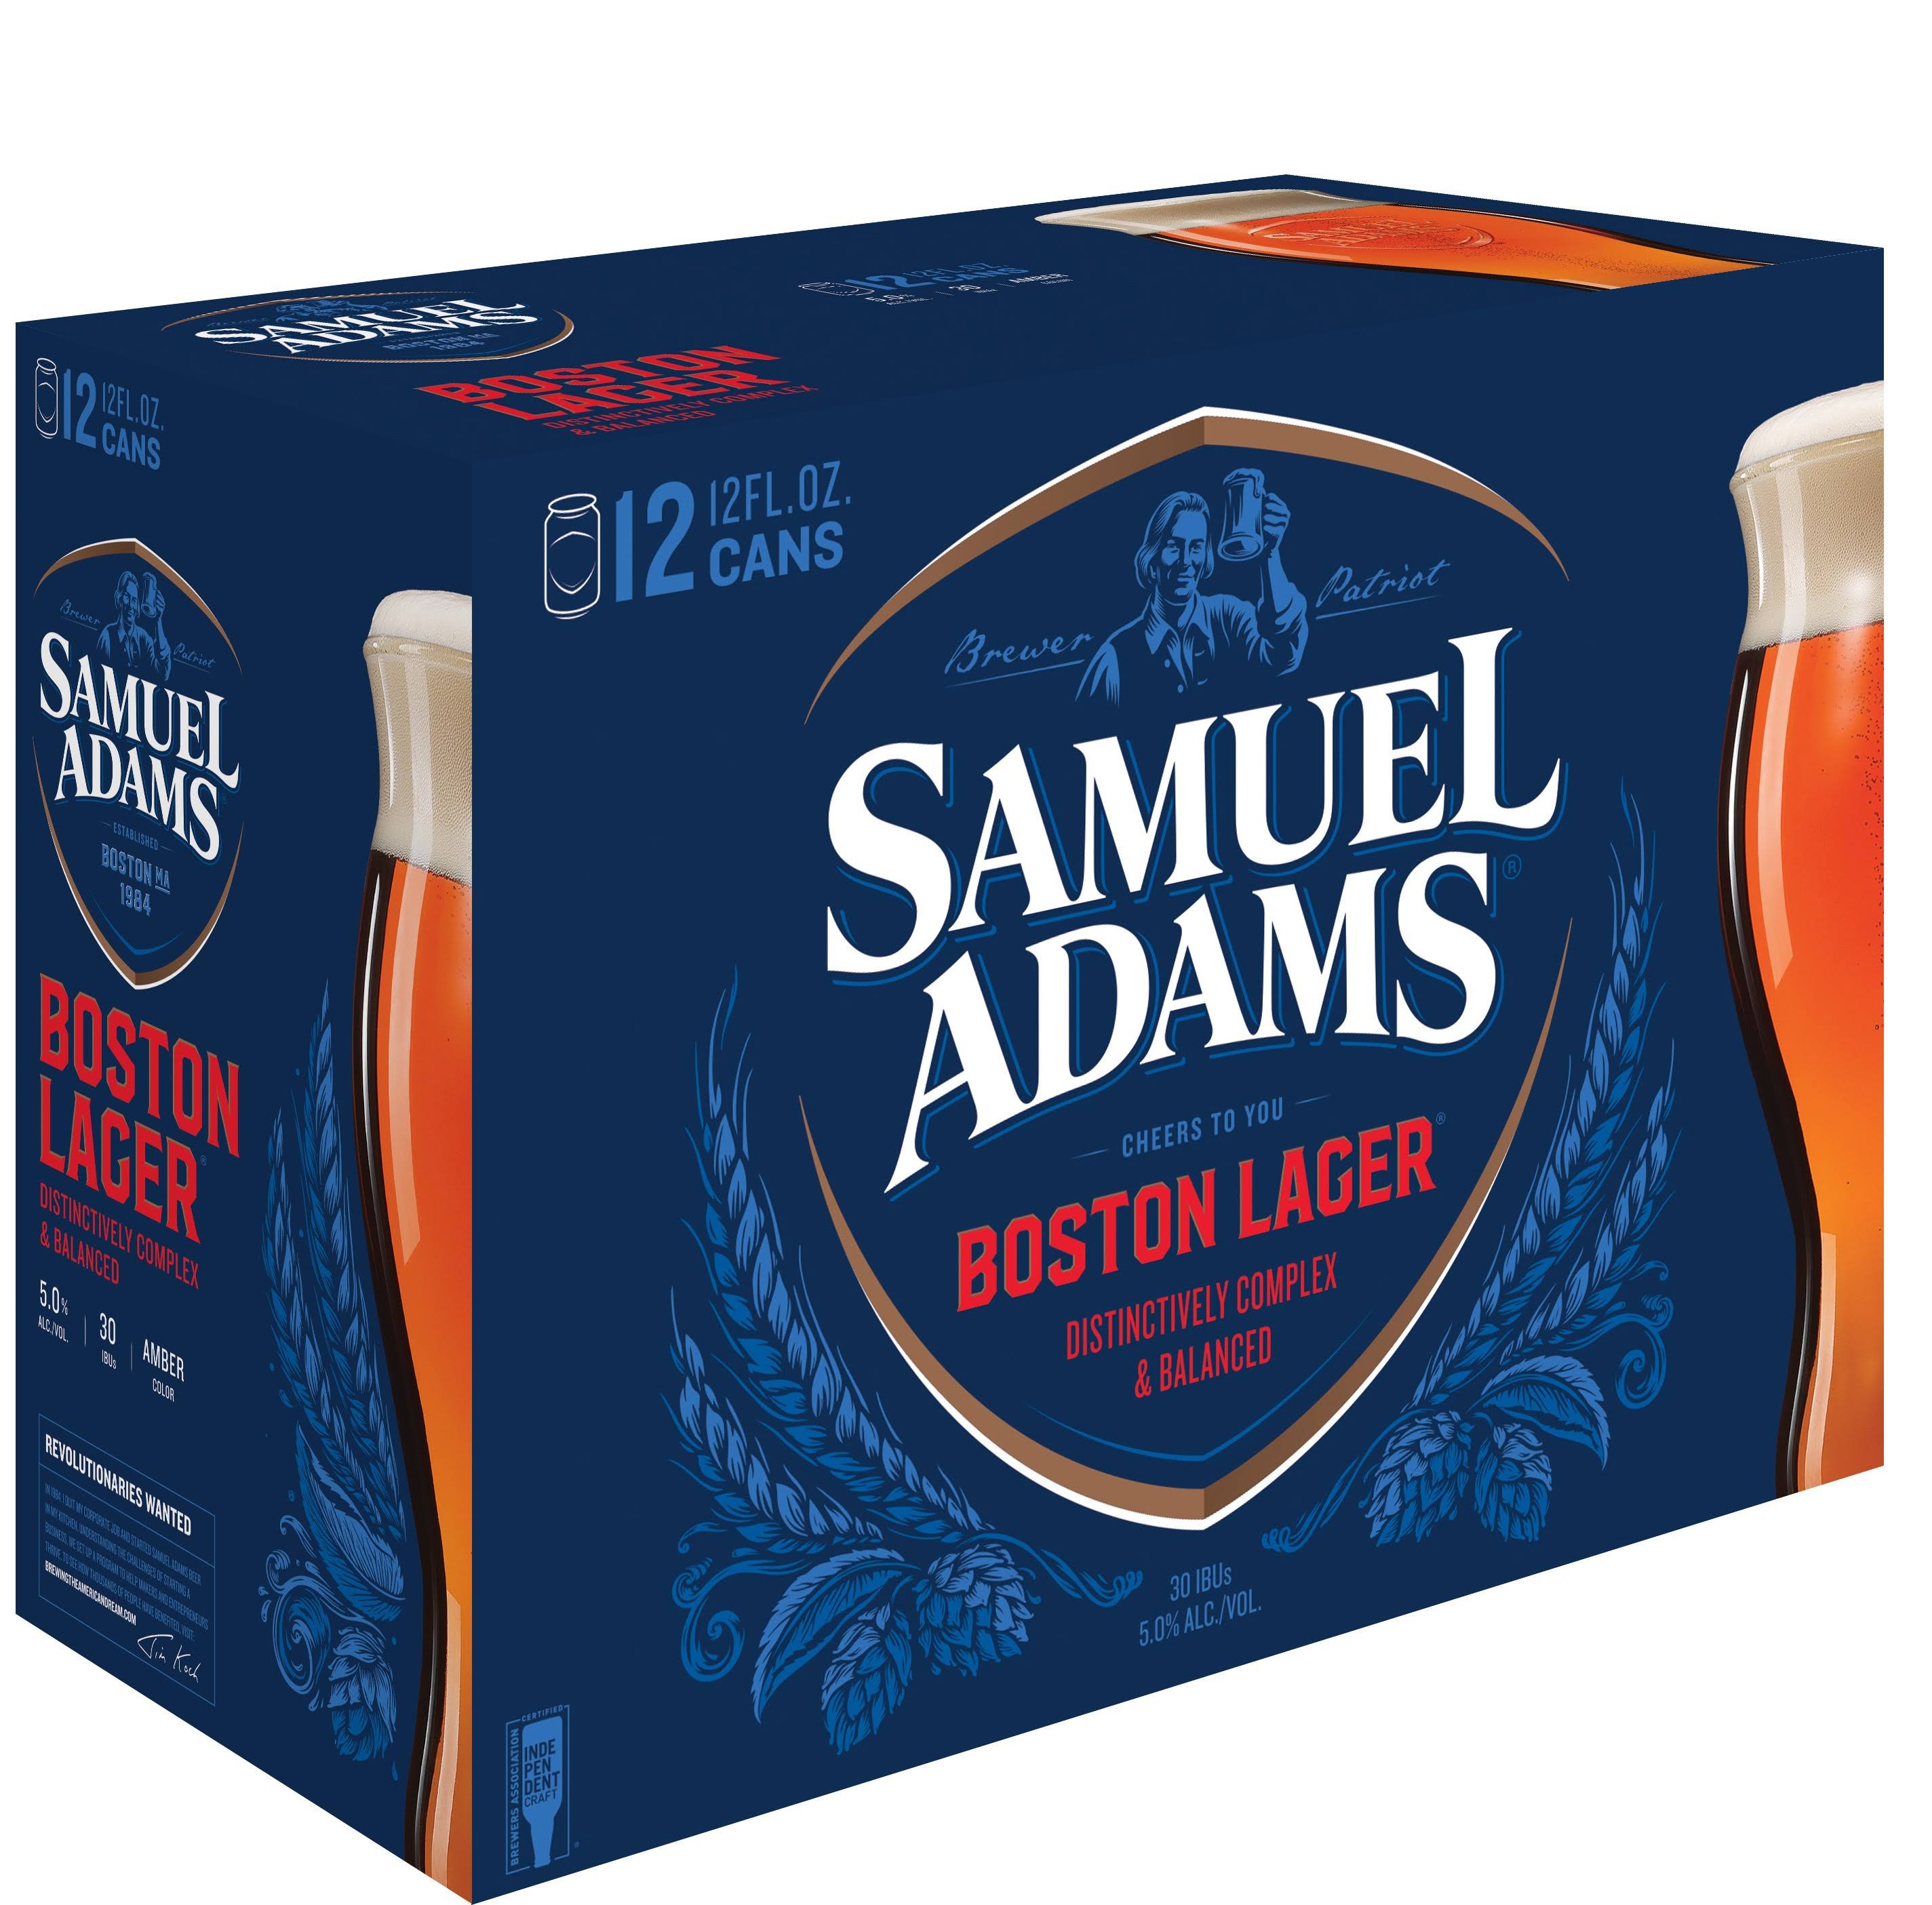 Samuel Adams Boston Lager Beer - 12 Cans